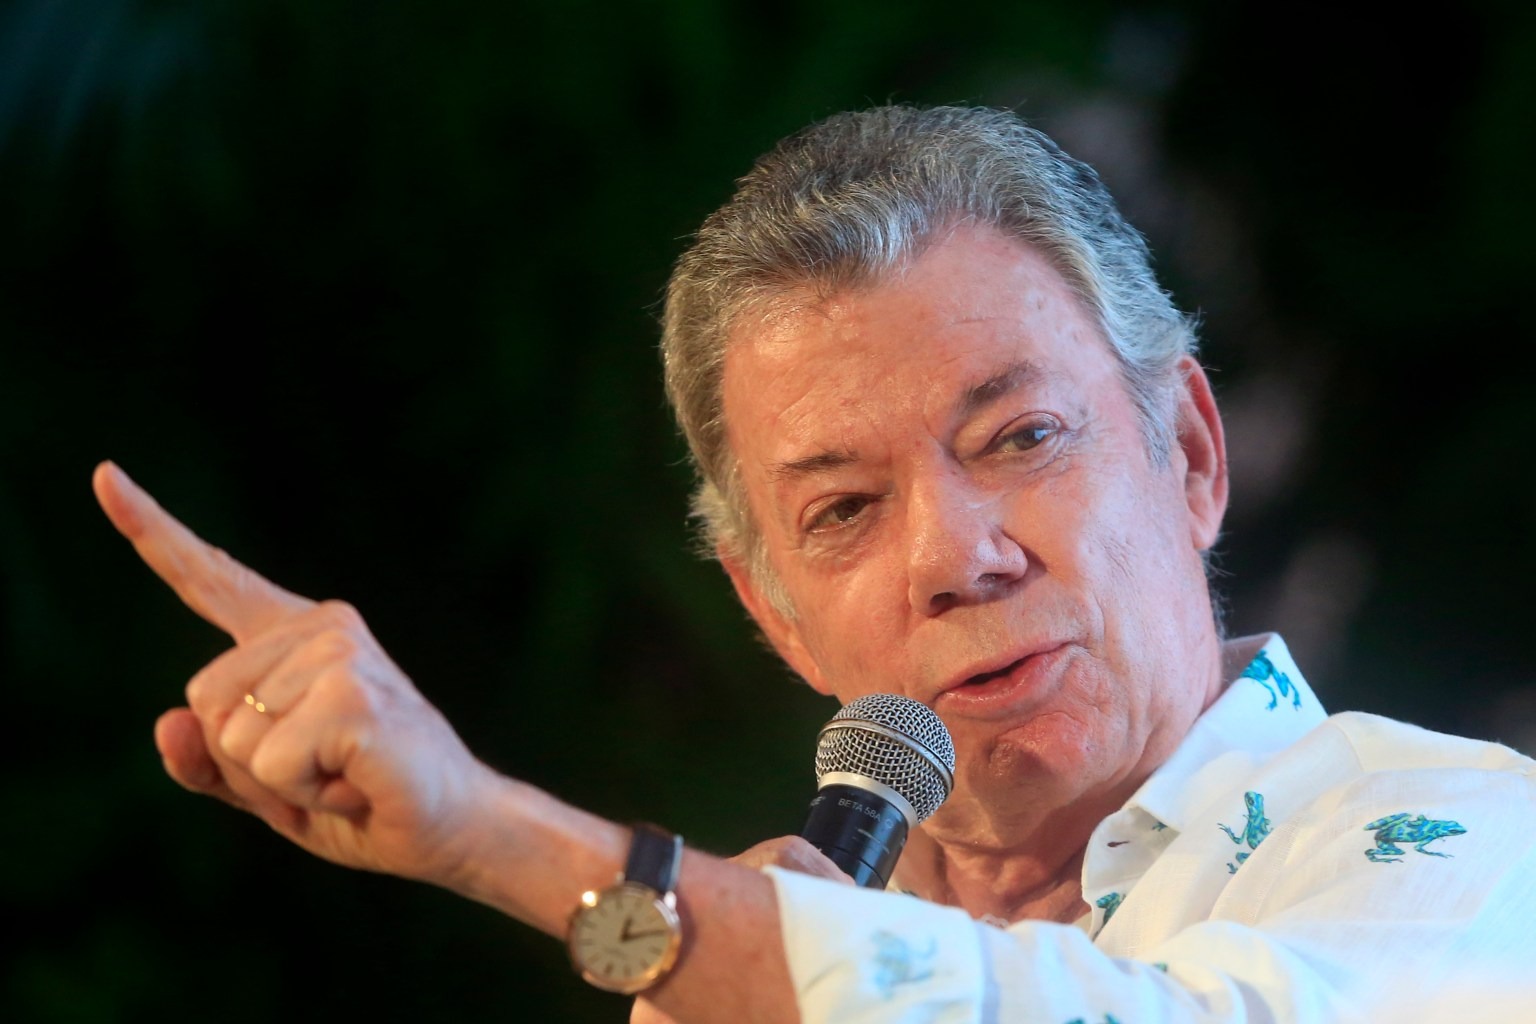 Santos envía carta a ONU para parar intenciones de Gobierno colombiano sobre constituyente